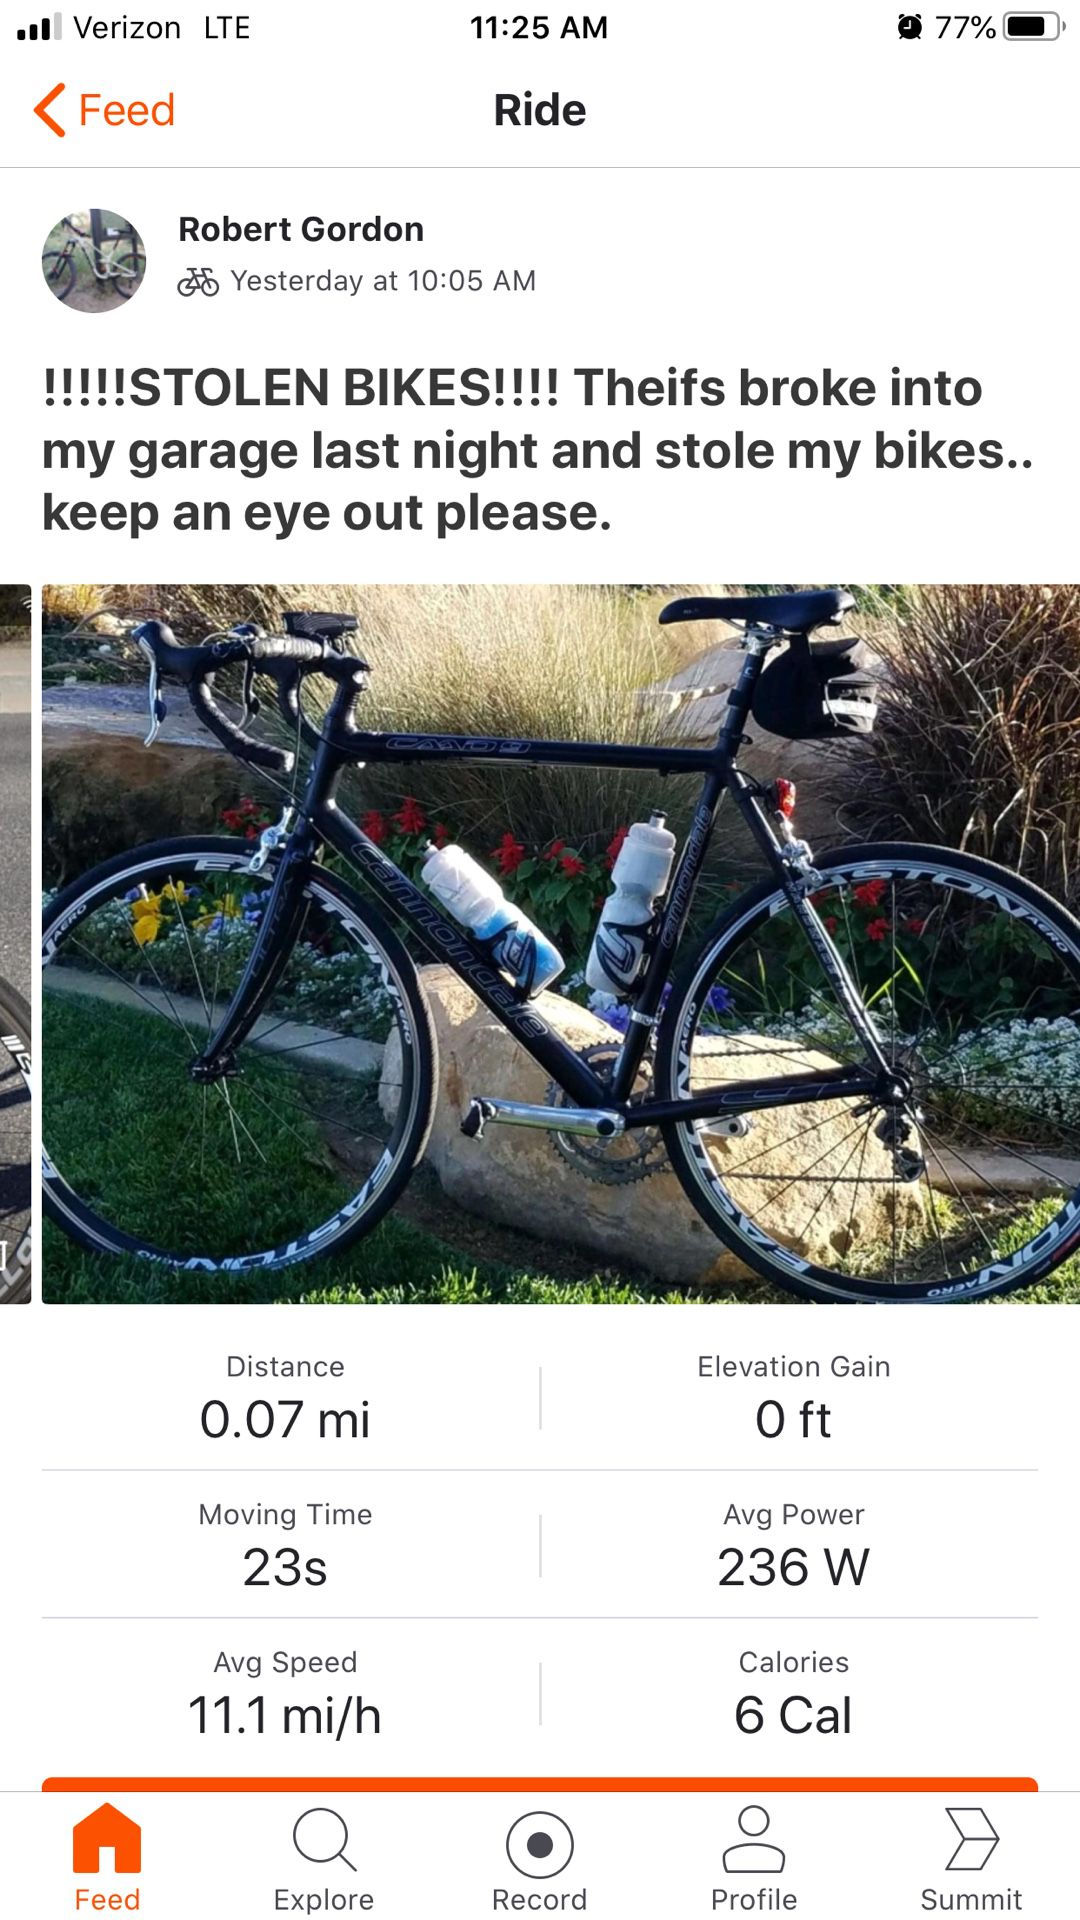 !!! Stolen bikes !!! 4 bikes total